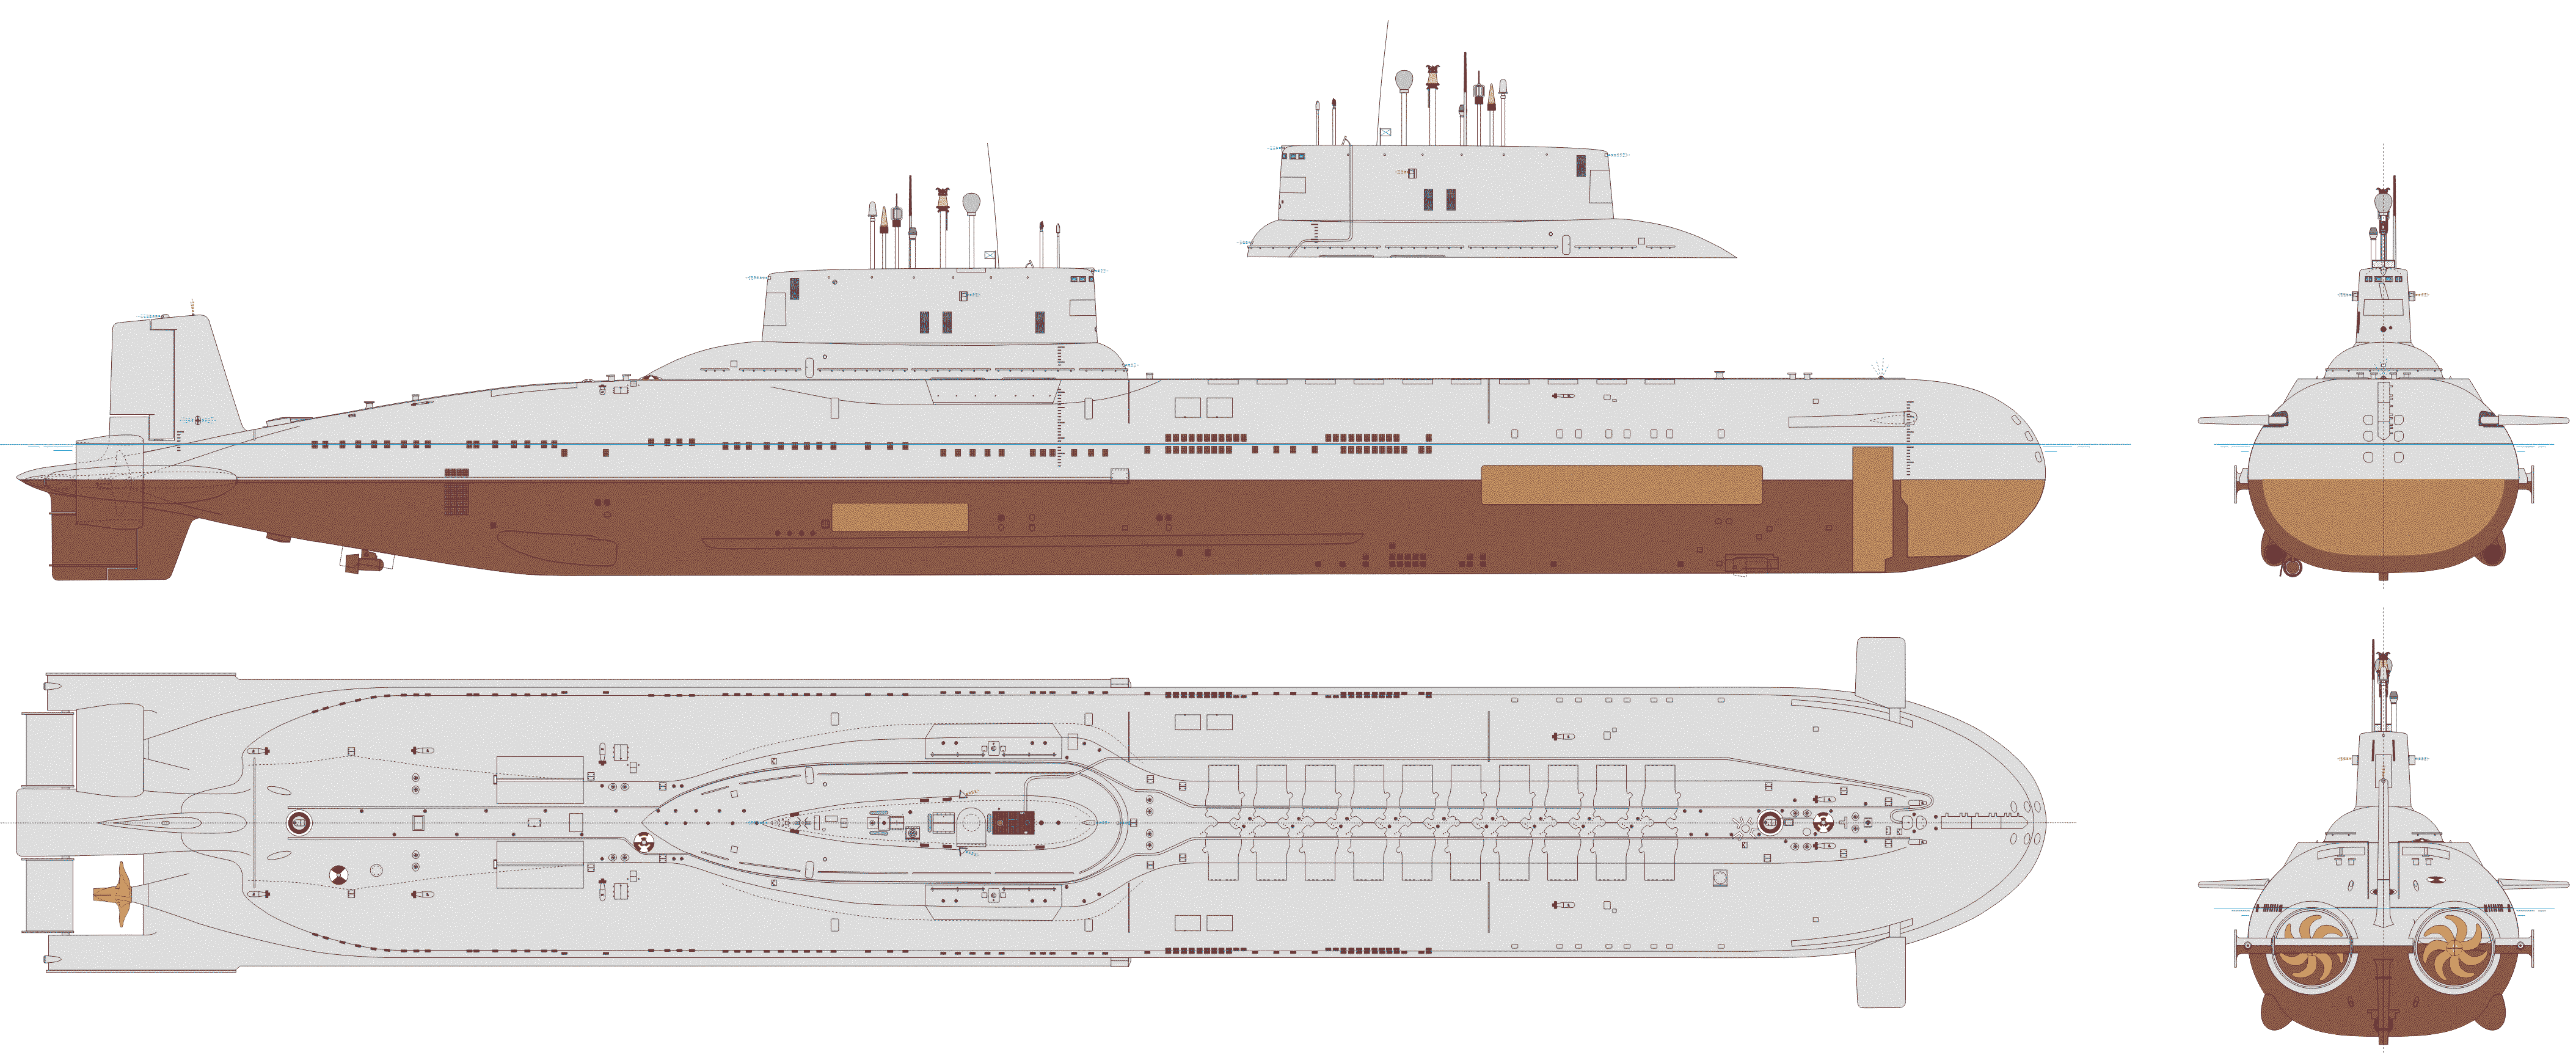 Typhoon-class submarine blueprint